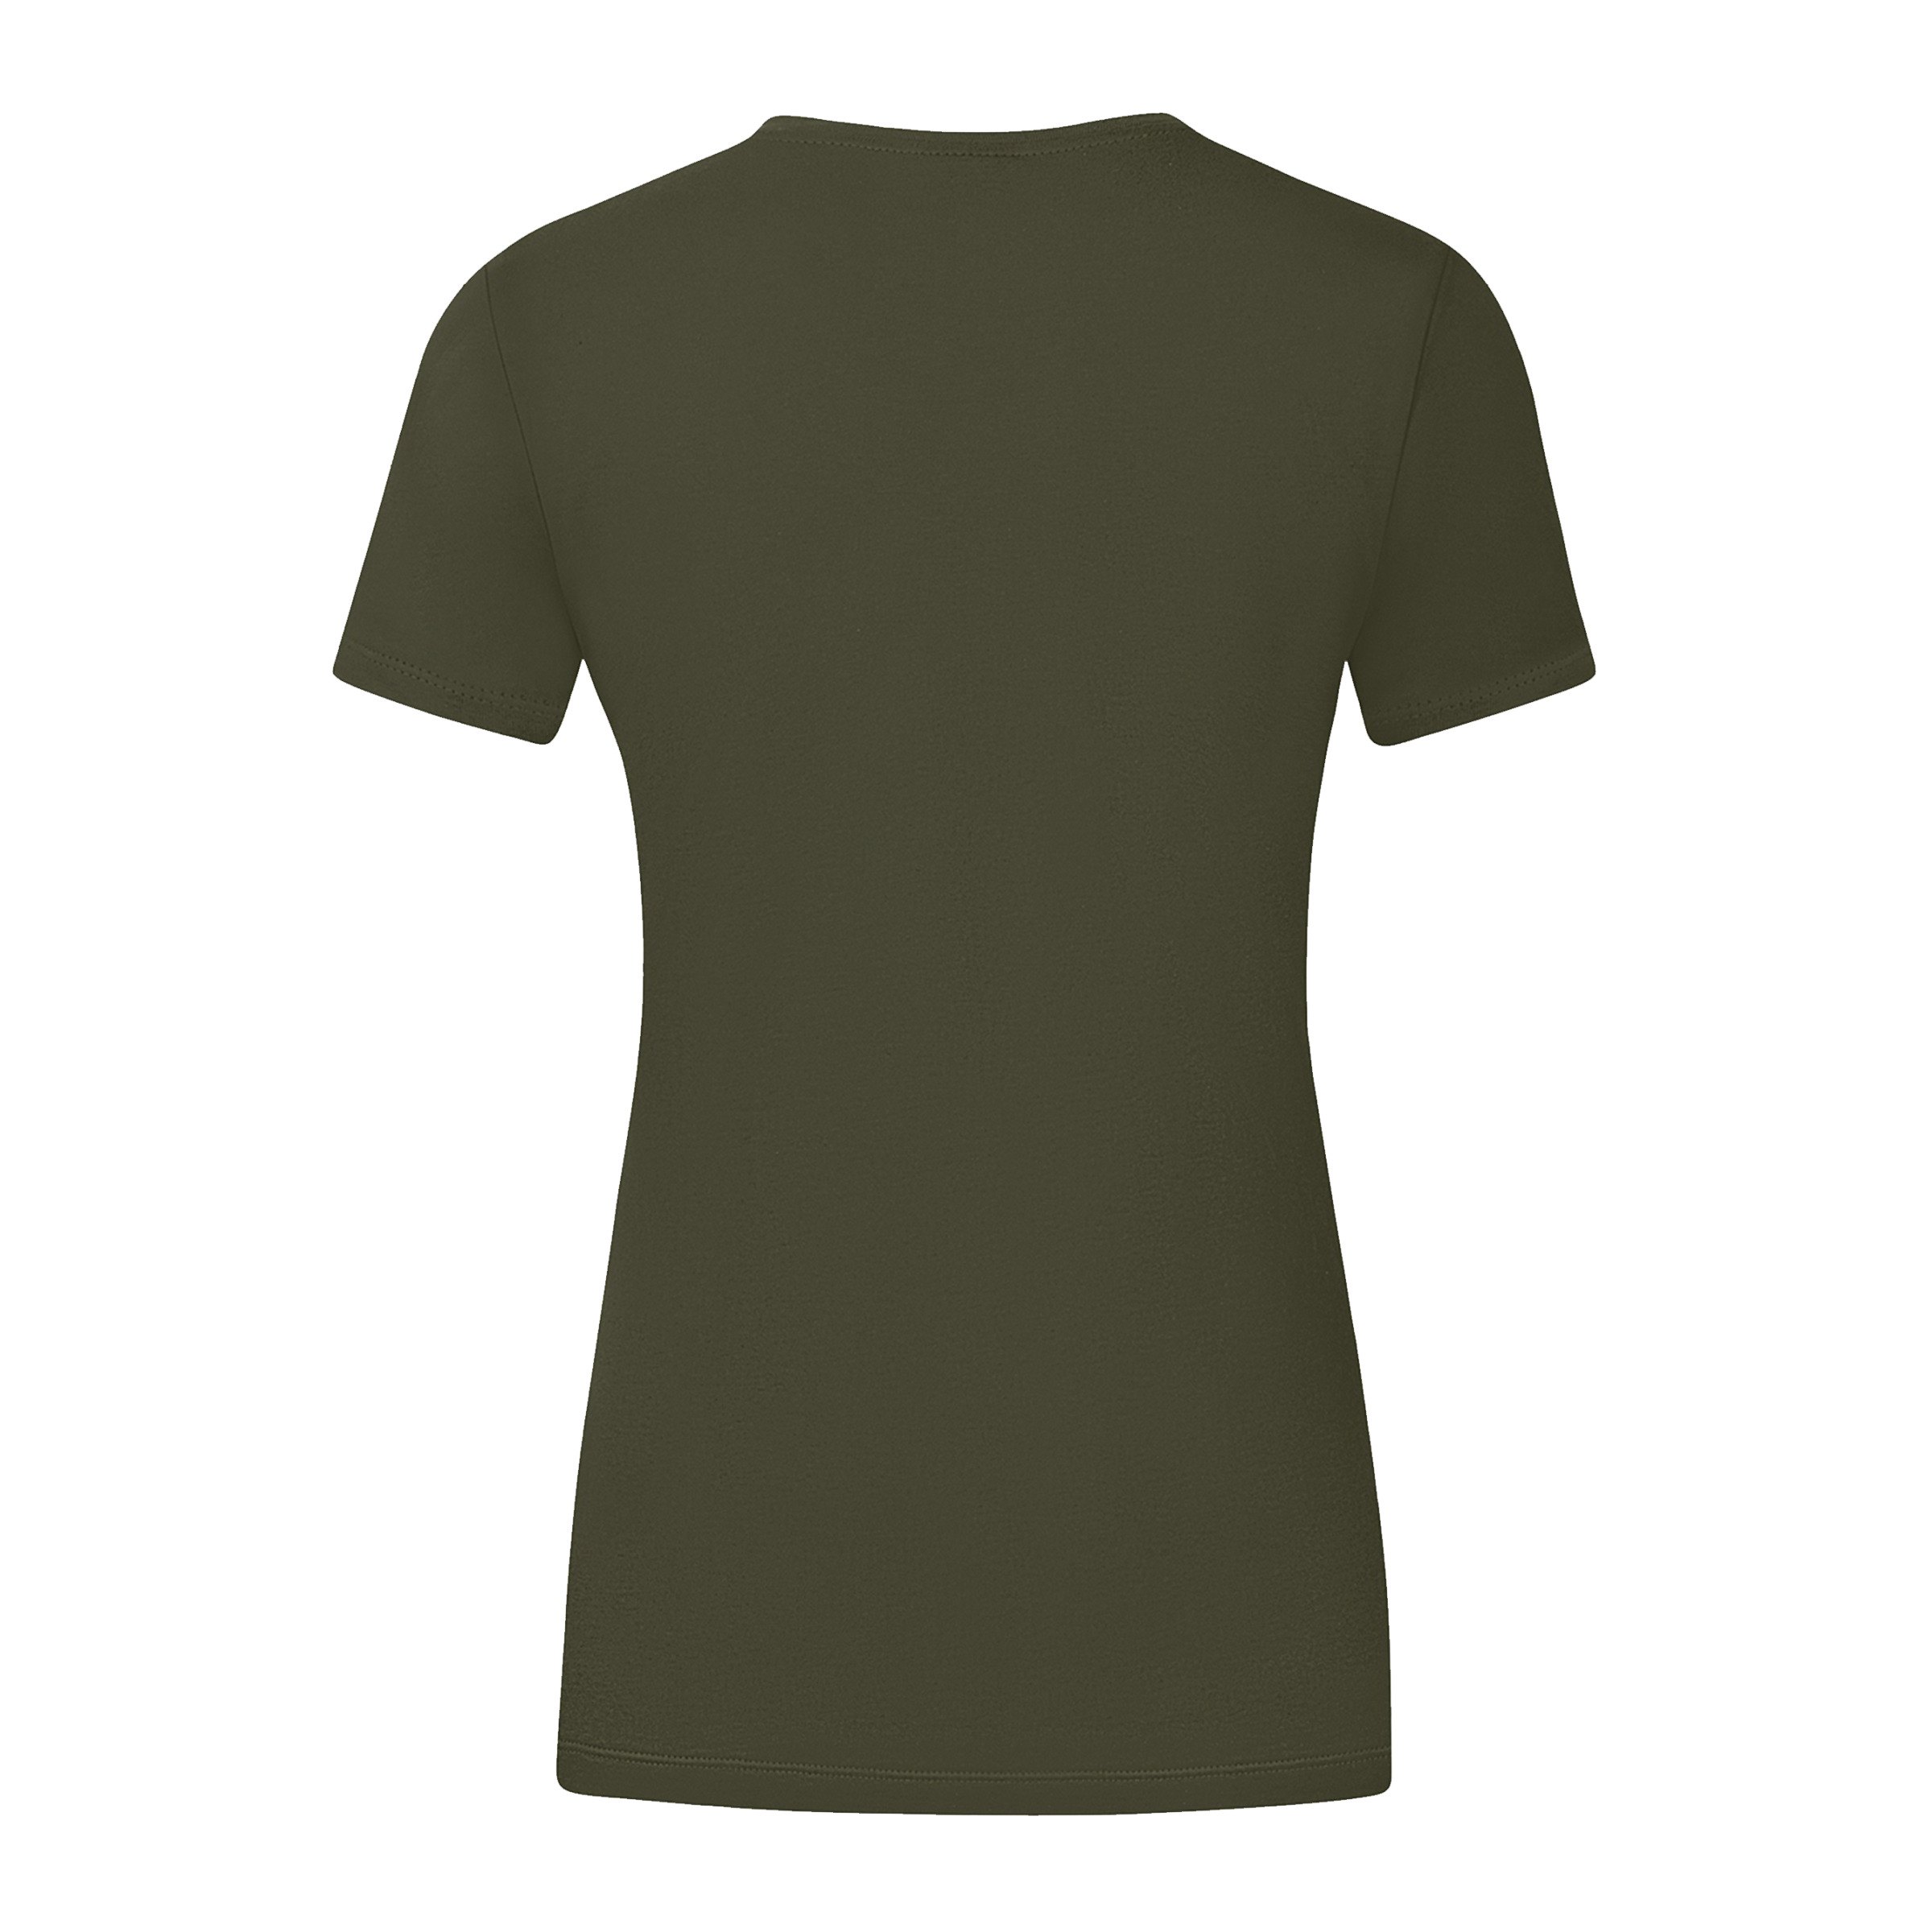 JAKO Promo T-Shirt Damen Khaki Grün F231 khaki